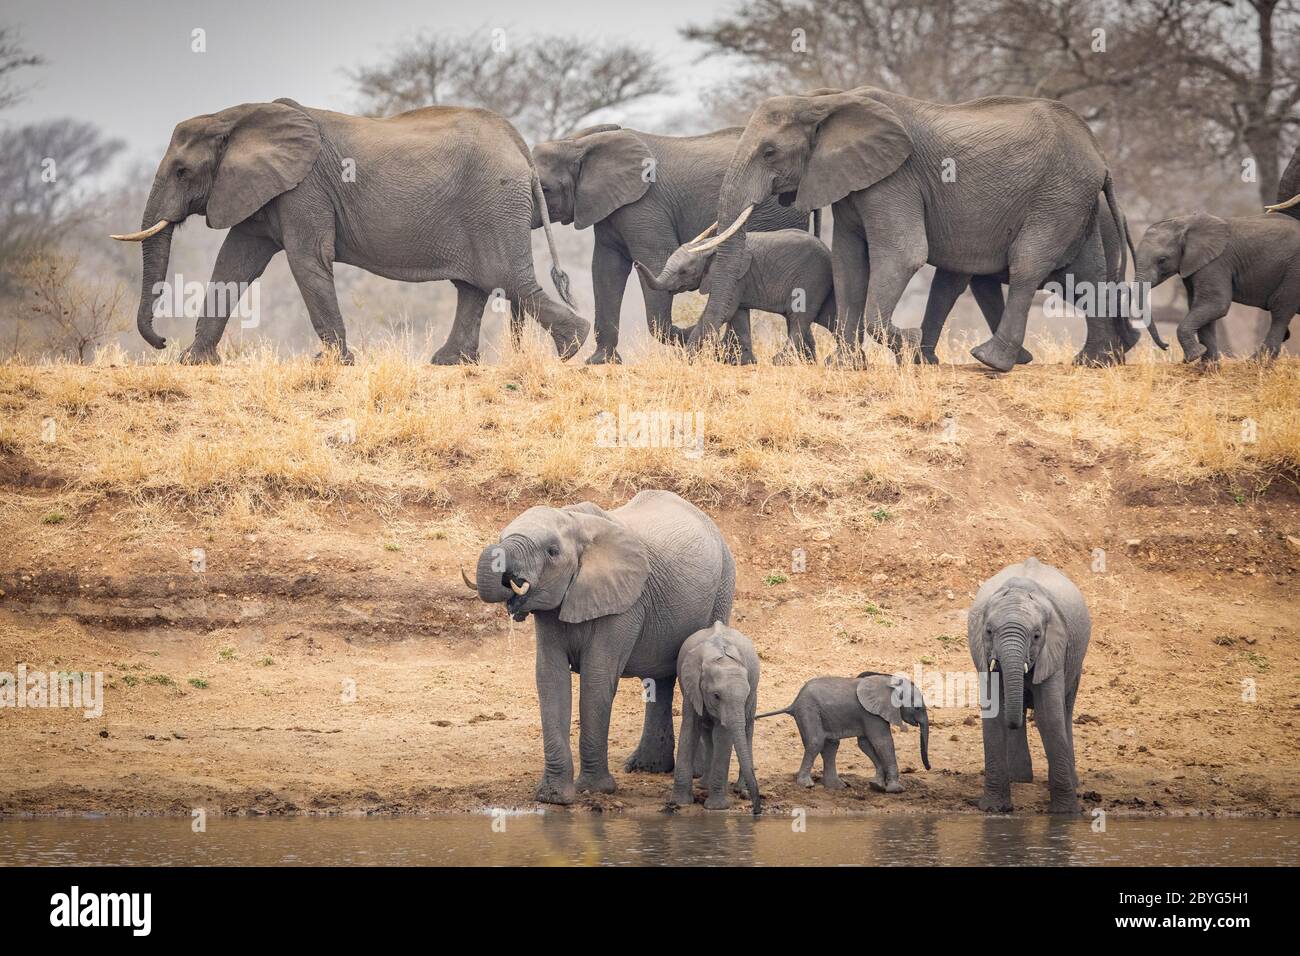 Un troupeau d'éléphants marchant sur le mur du barrage avec de l'eau déjà potable en bas sous les éléphants femelles, jeunes et bébés dans le parc Kruger en Afrique du Sud en hiver Banque D'Images